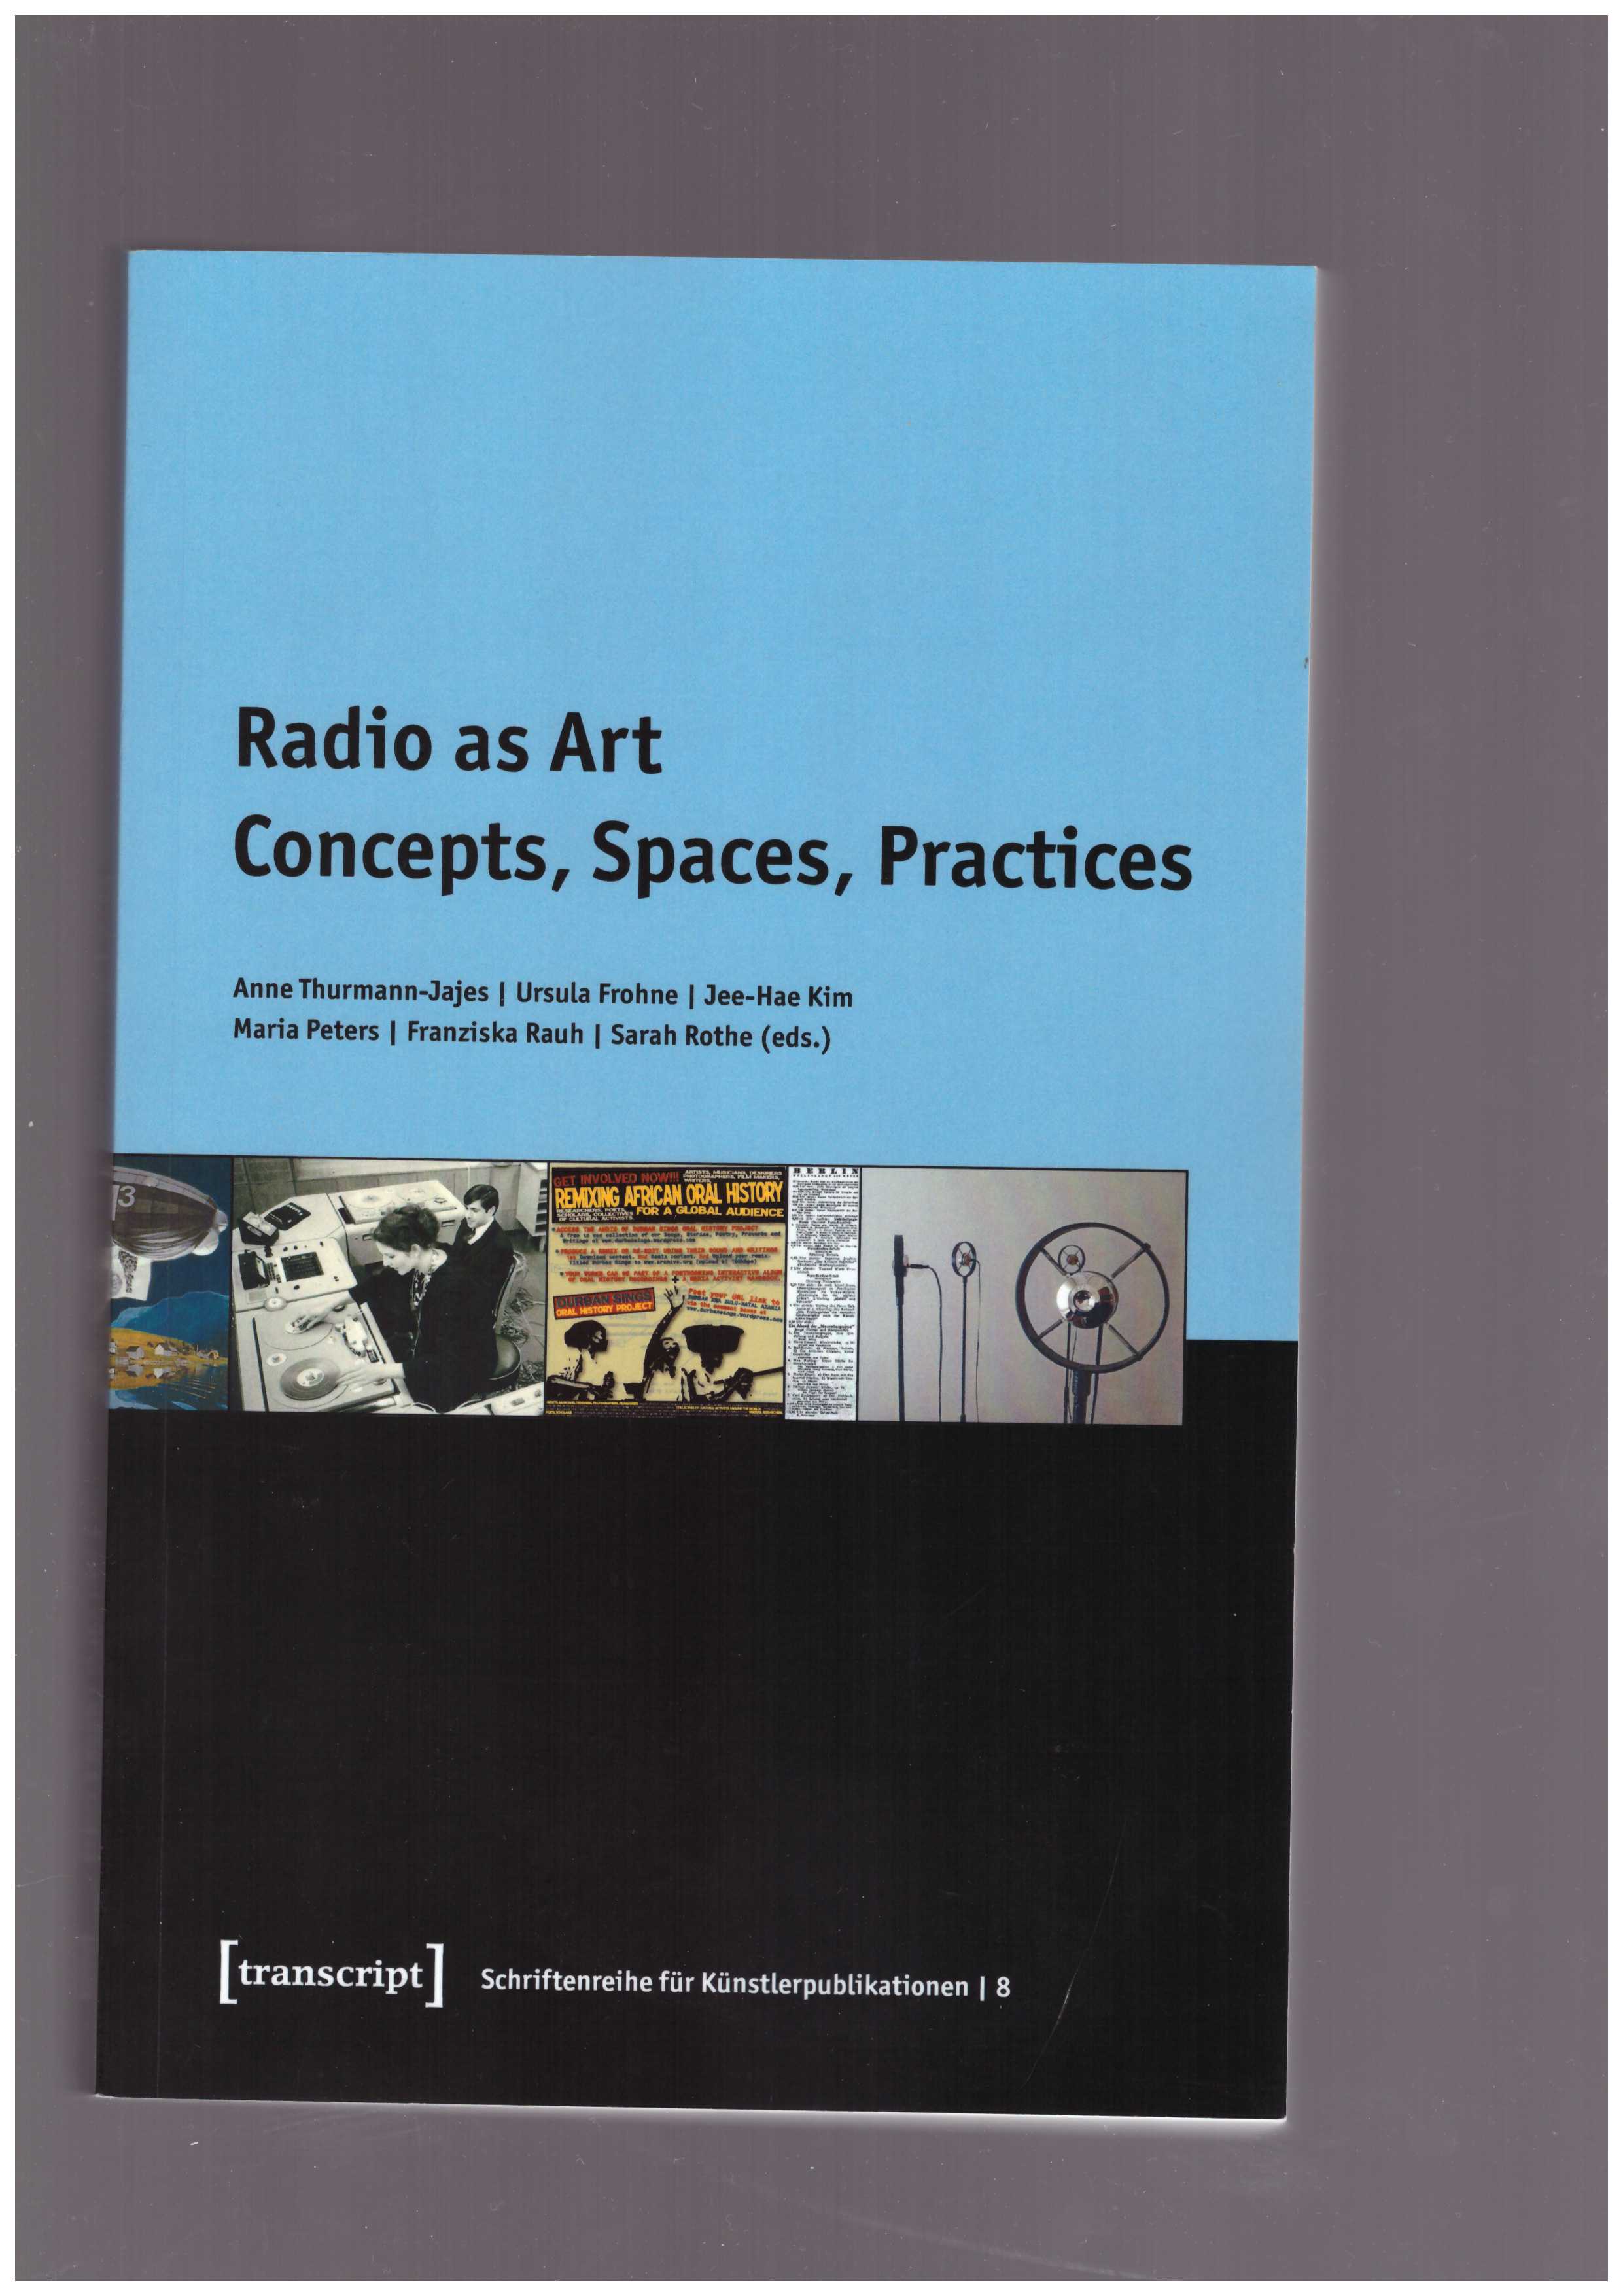 THURMANN-JAJES, Anne ; FROHNE, Ursula et al. (eds.) - Radio as Art.  Concepts, Spaces, Practices